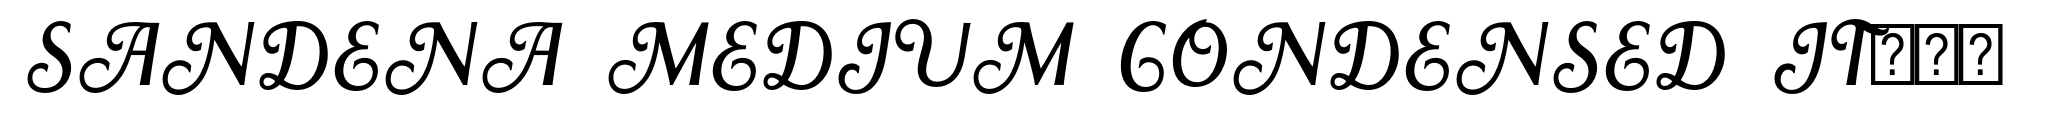 Sandena Medium Condensed Italic Swash image